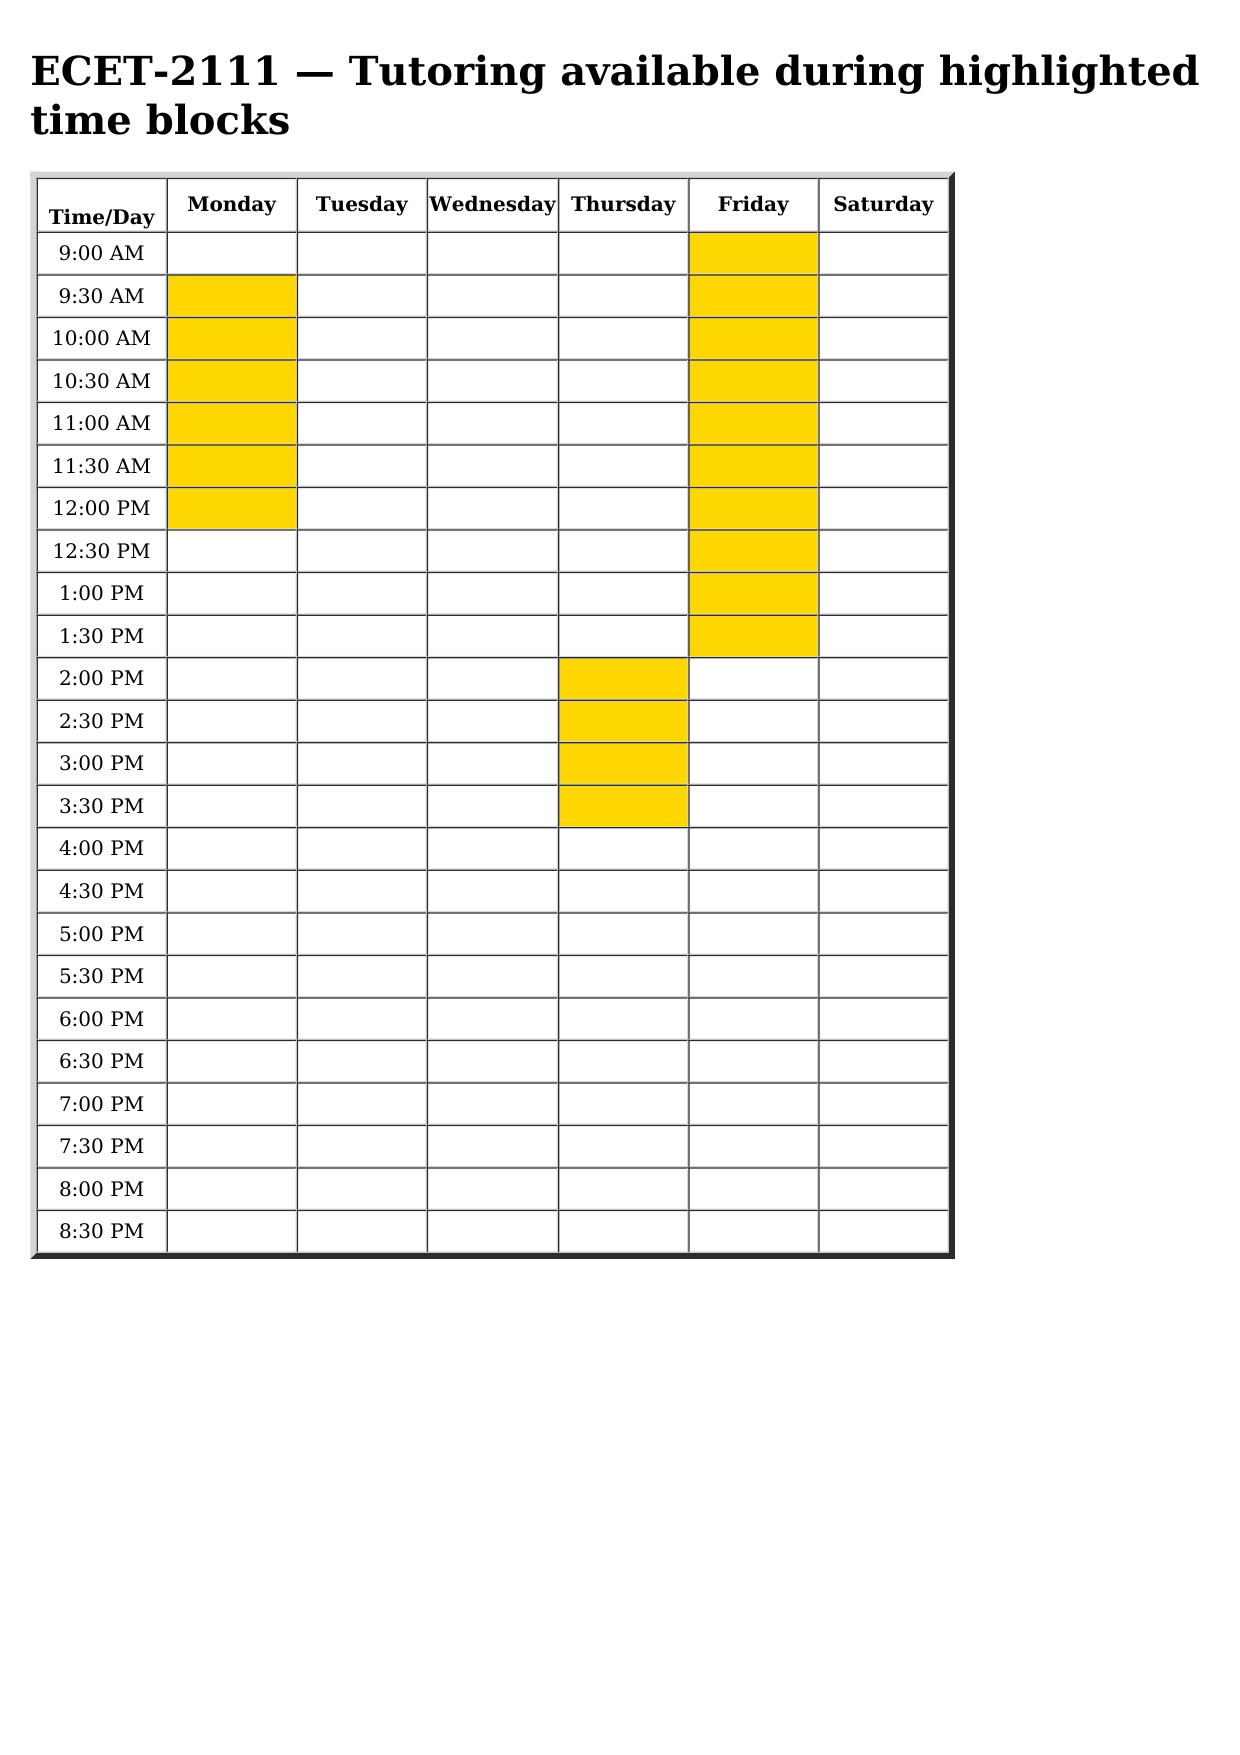 ecet 2111 schedule